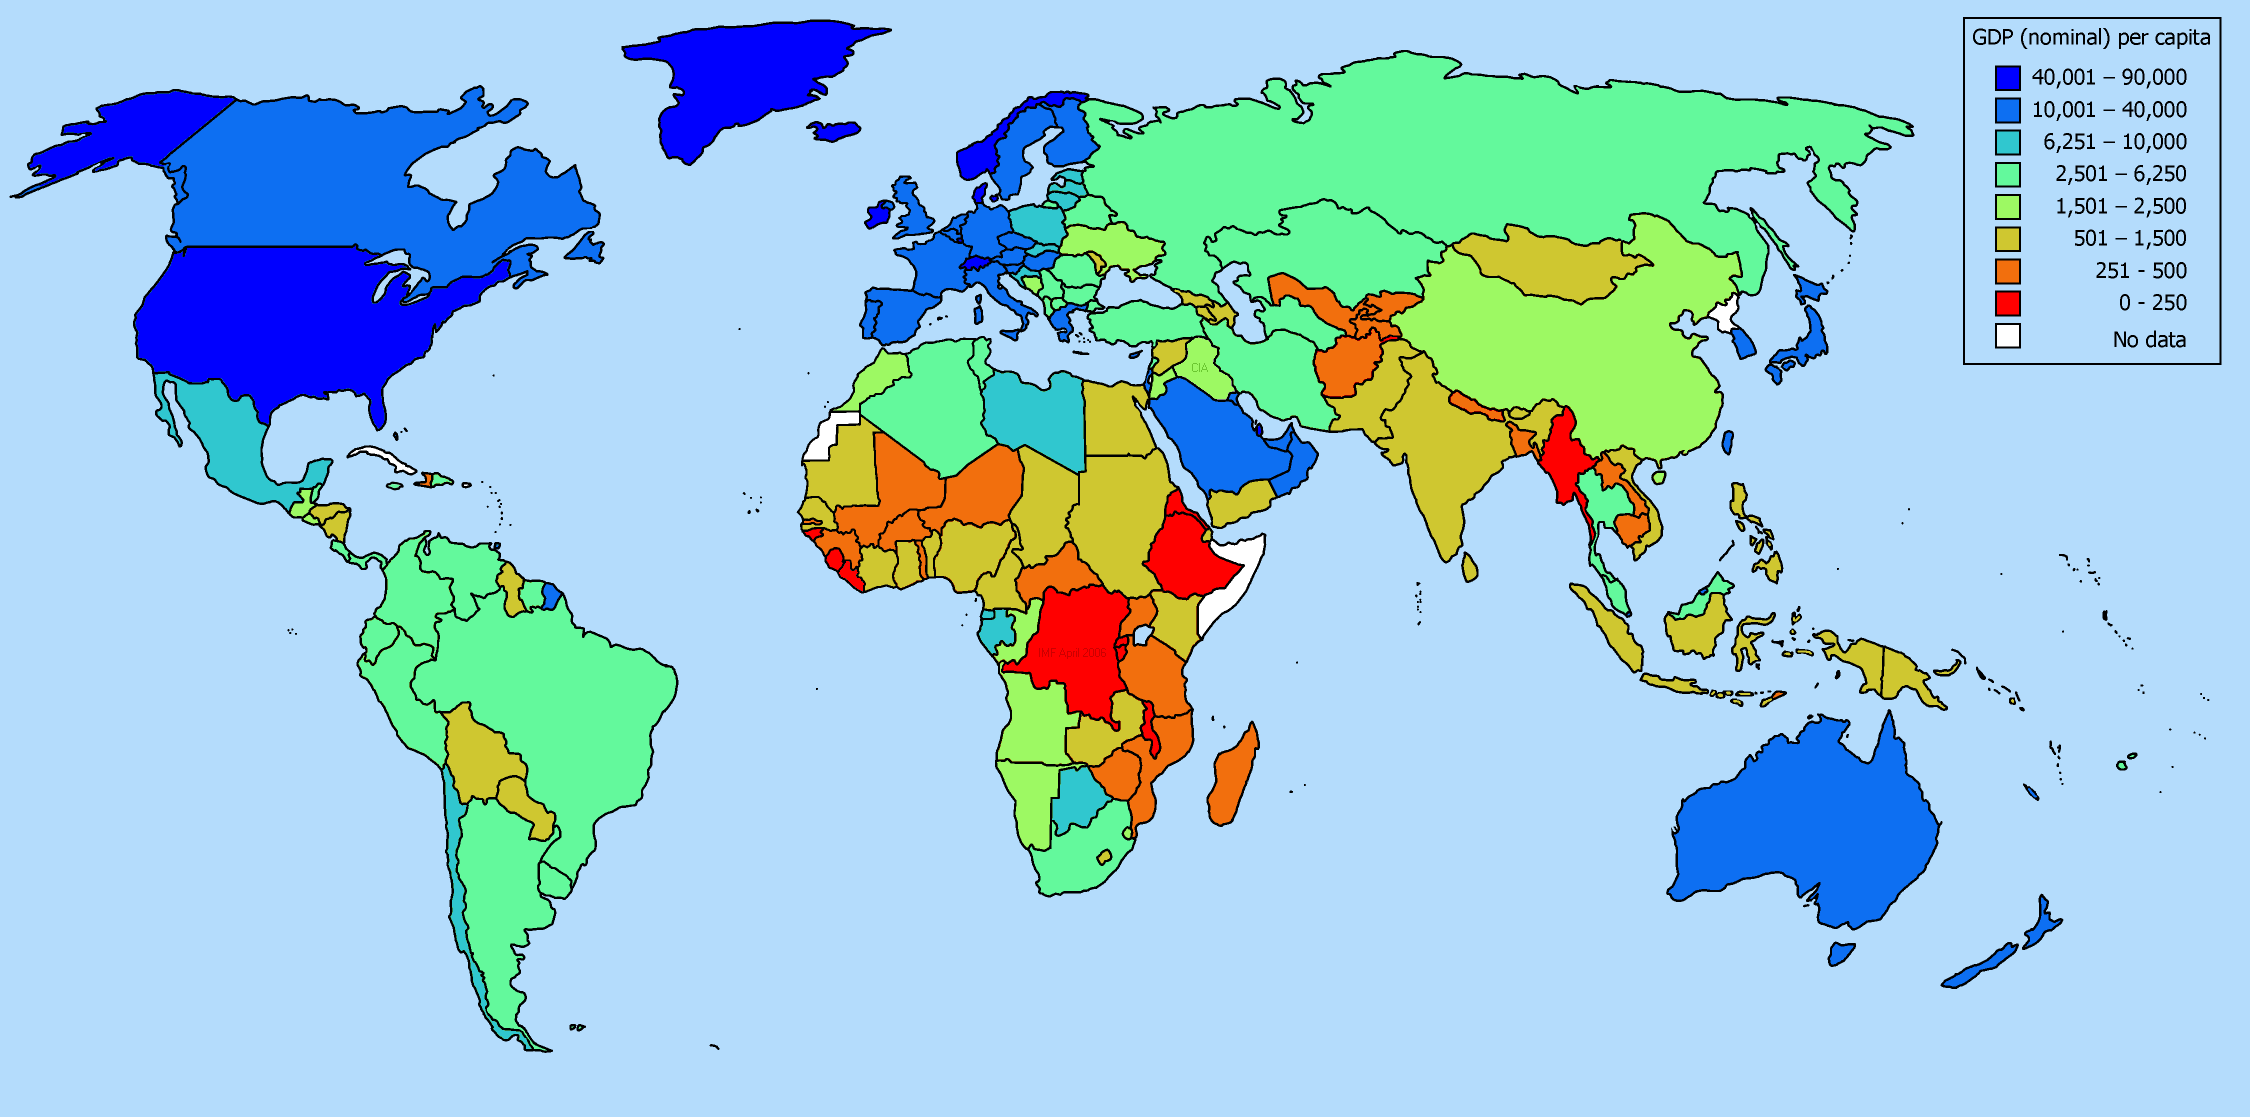 Карта ввп стран. Развитые и развивающиеся страны карта. Карта экономики стран.